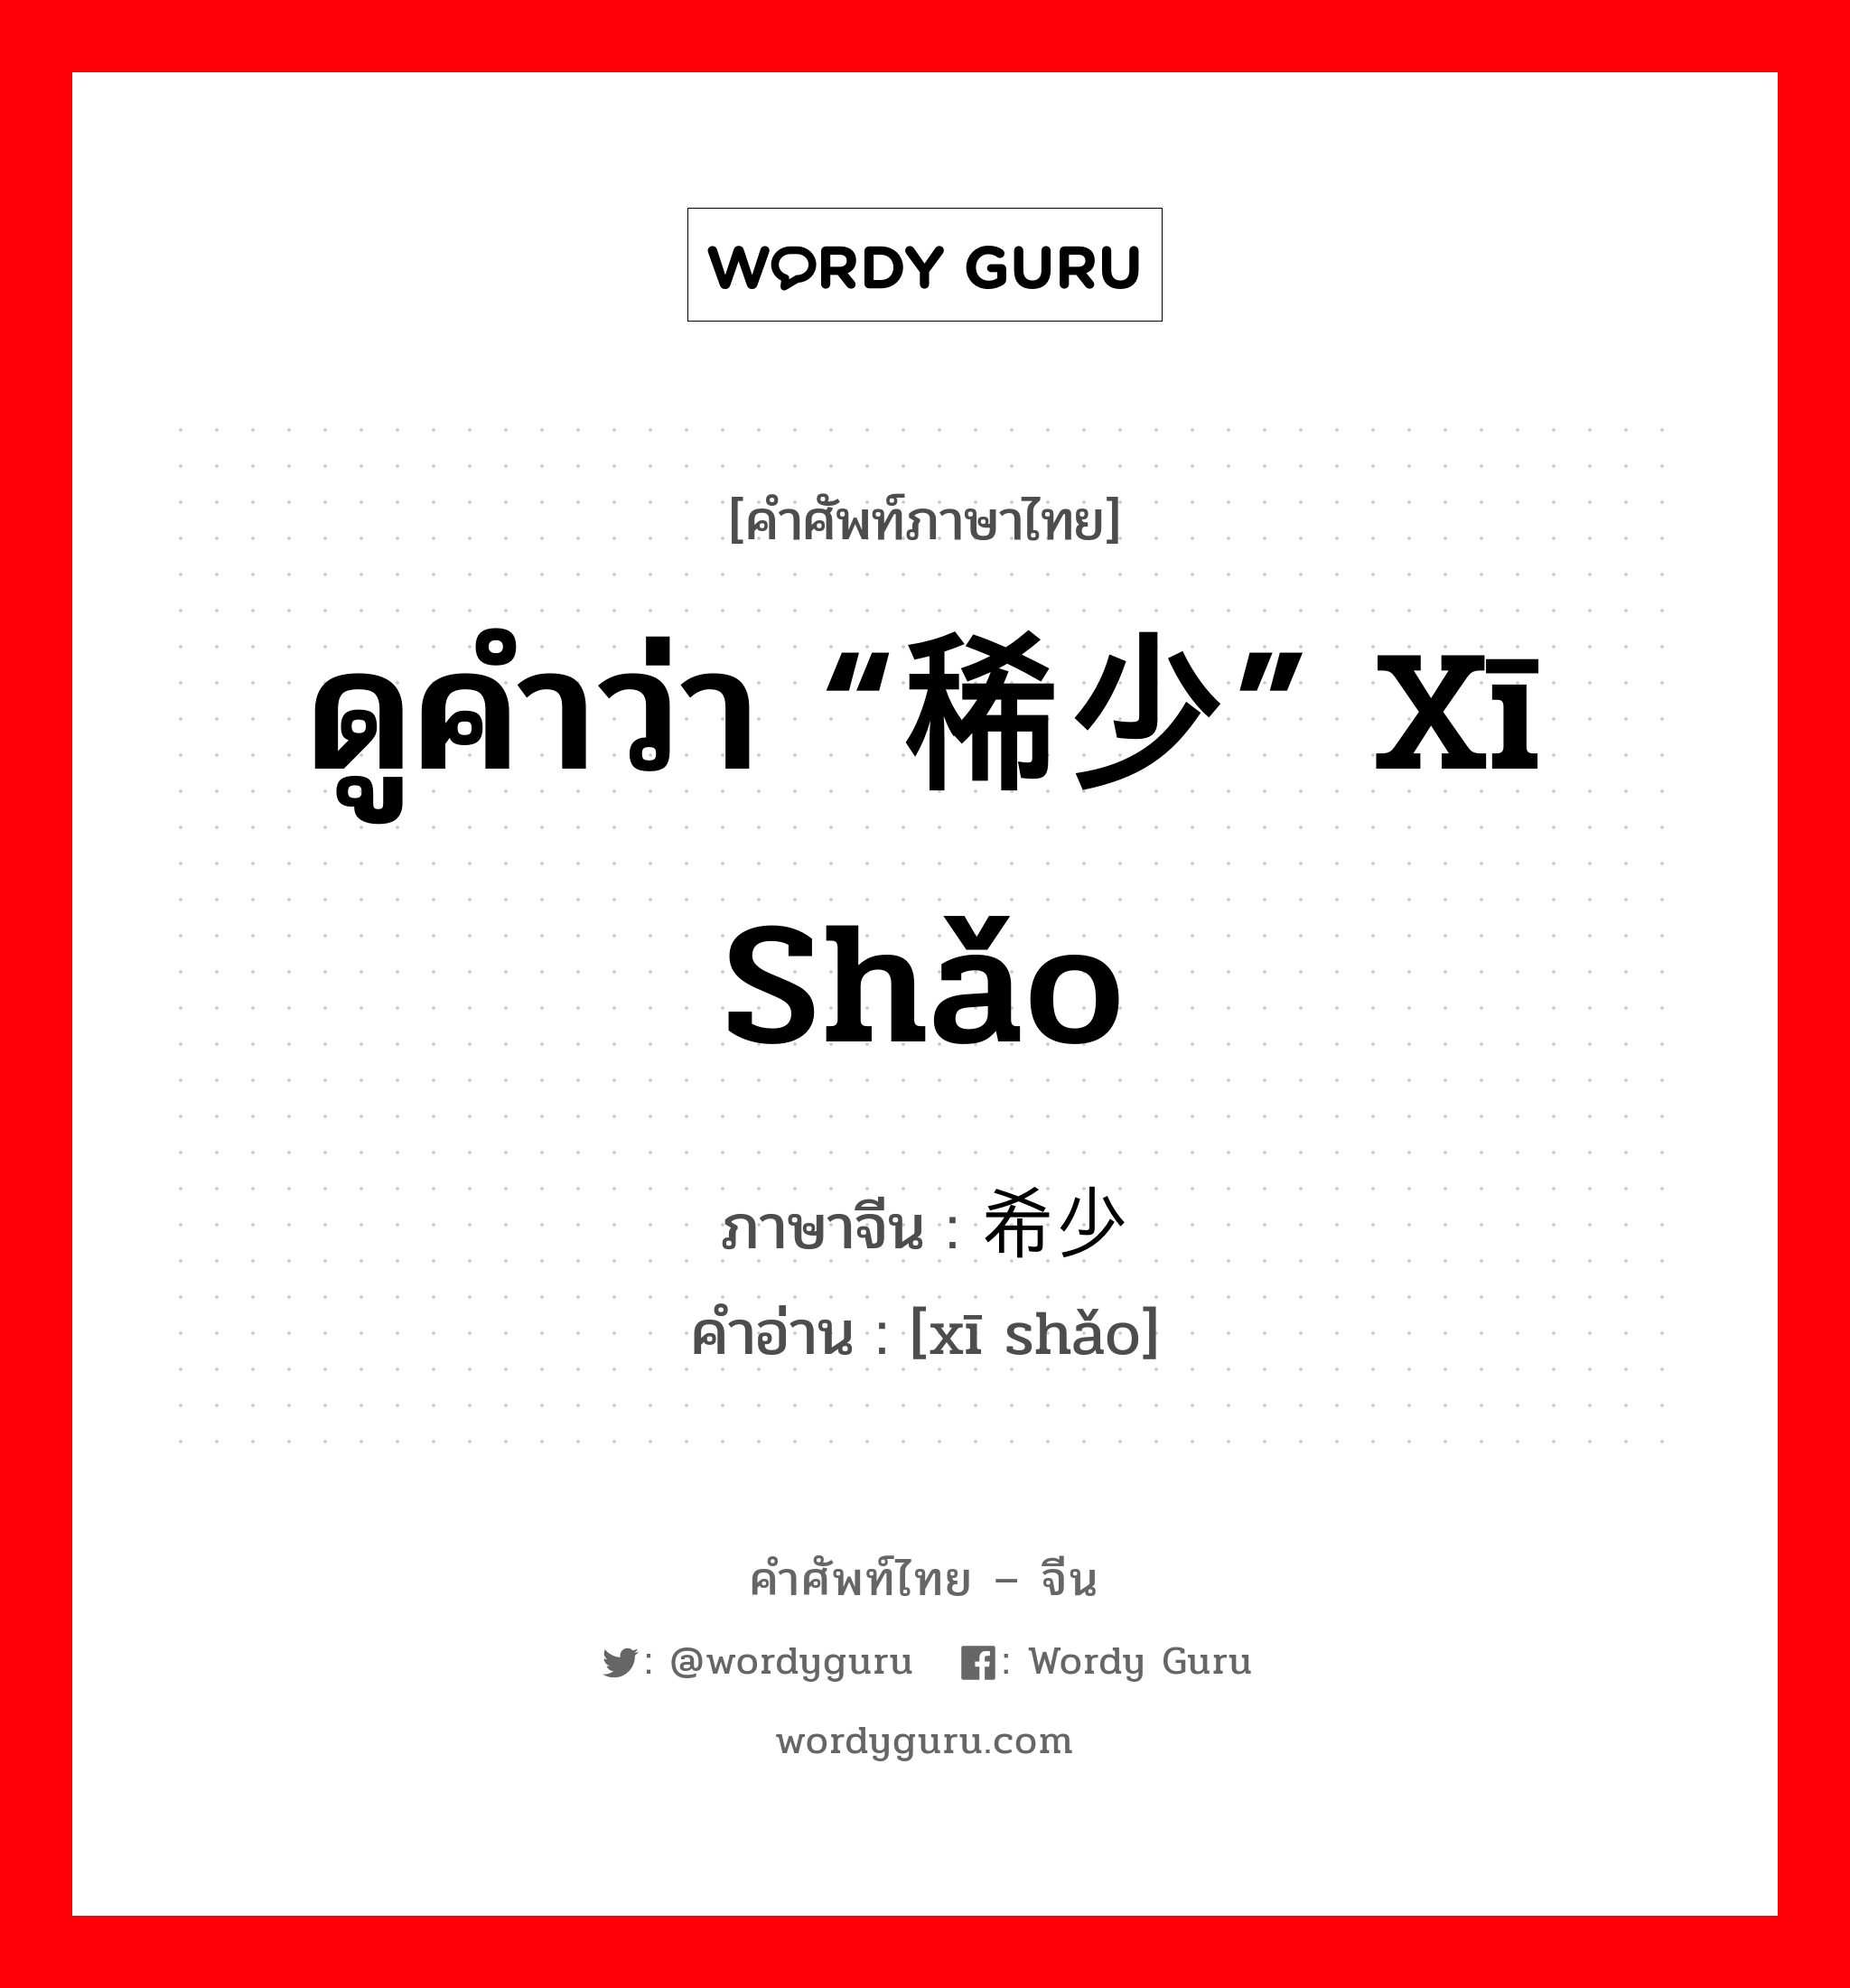 ดูคำว่า “稀少” xī shǎo ภาษาจีนคืออะไร, คำศัพท์ภาษาไทย - จีน ดูคำว่า “稀少” xī shǎo ภาษาจีน 希少 คำอ่าน [xī shǎo]